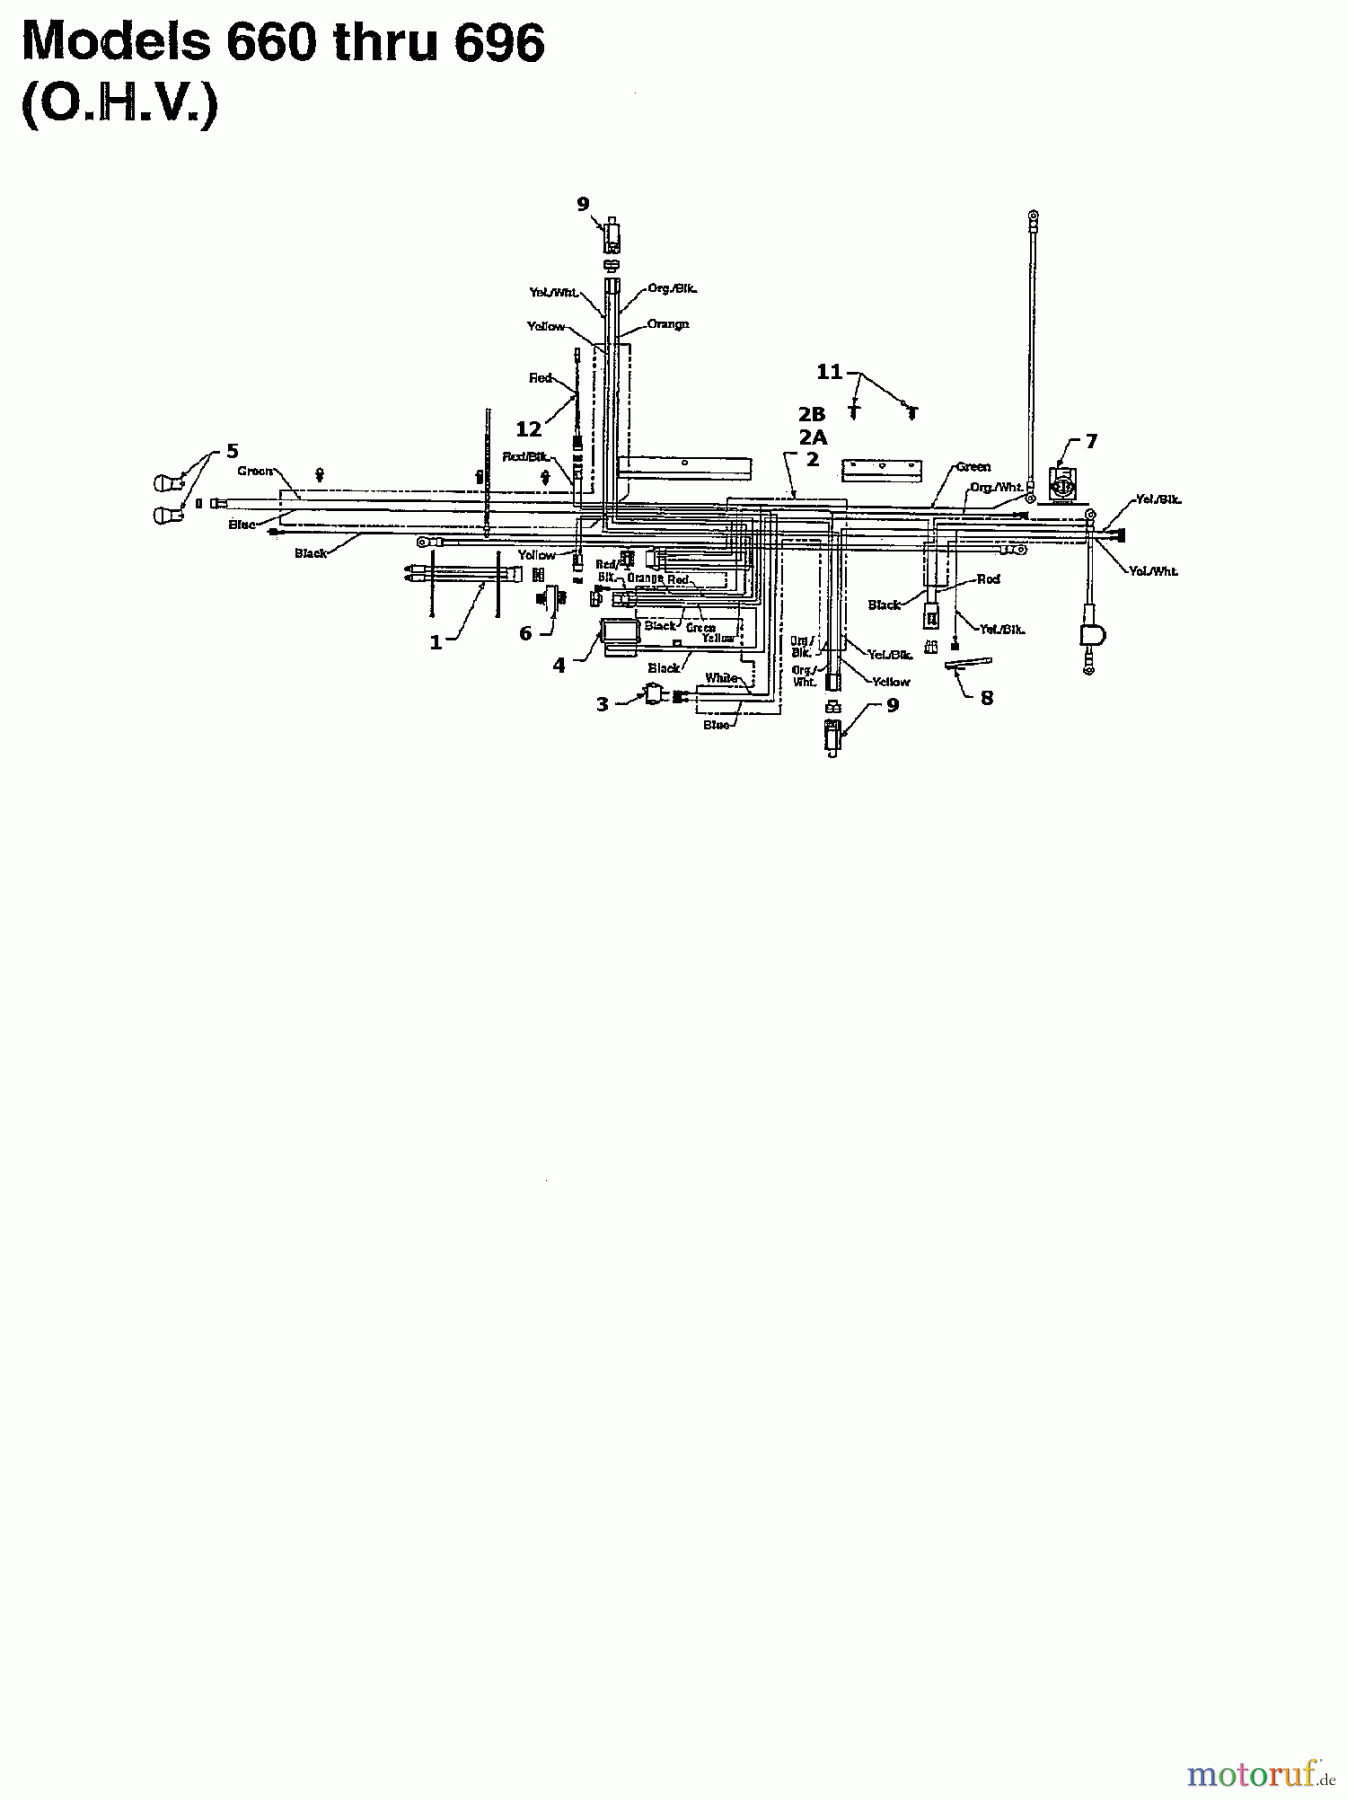  MTD Rasentraktoren CG 14 13AM661G607  (1997) Schaltplan für O.H.V.